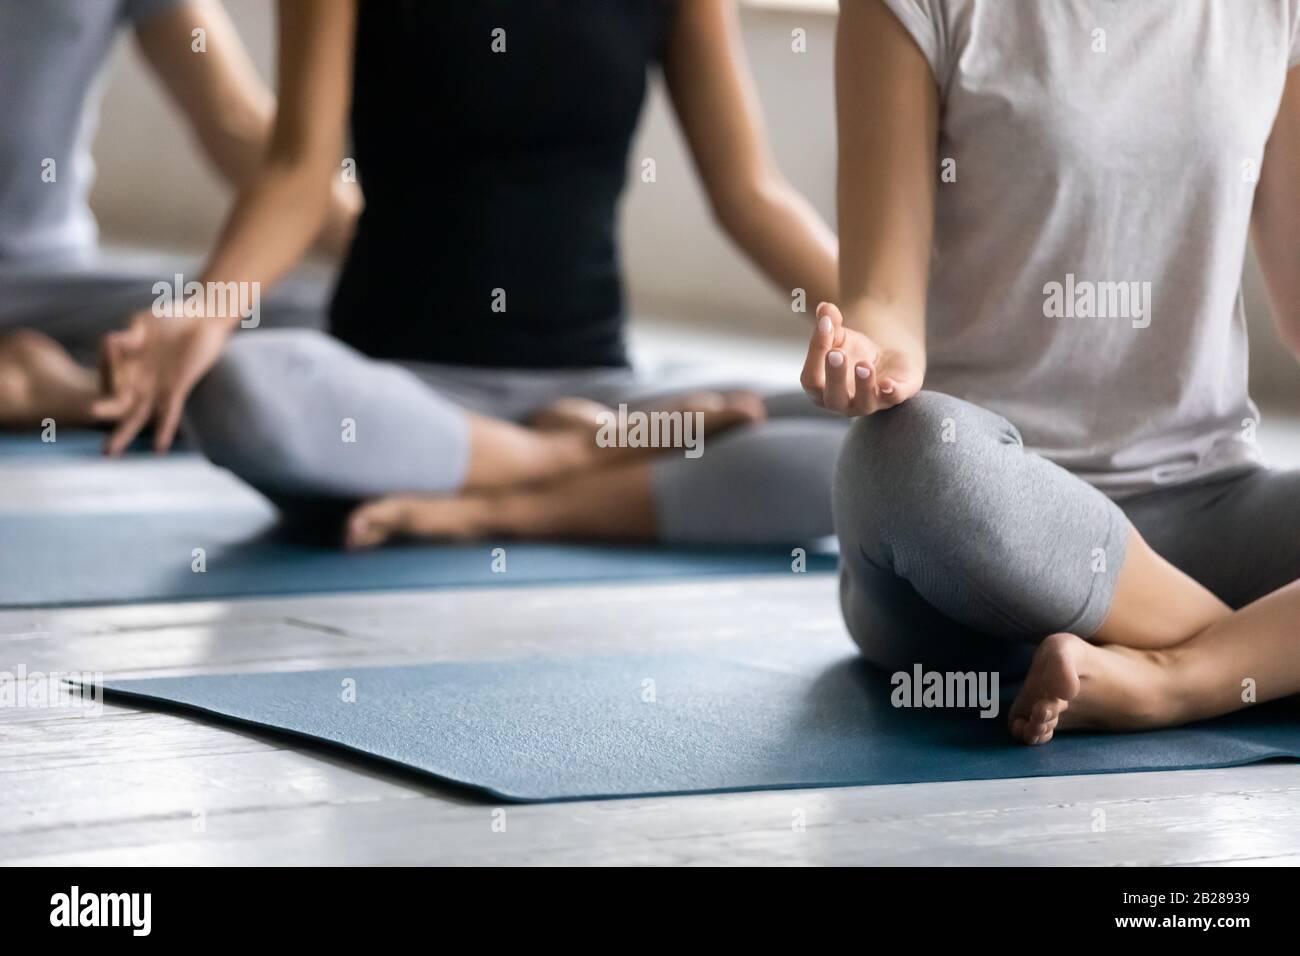 Les personnes assises à pattes croisées pratiquent la méditation à l'intérieur Banque D'Images